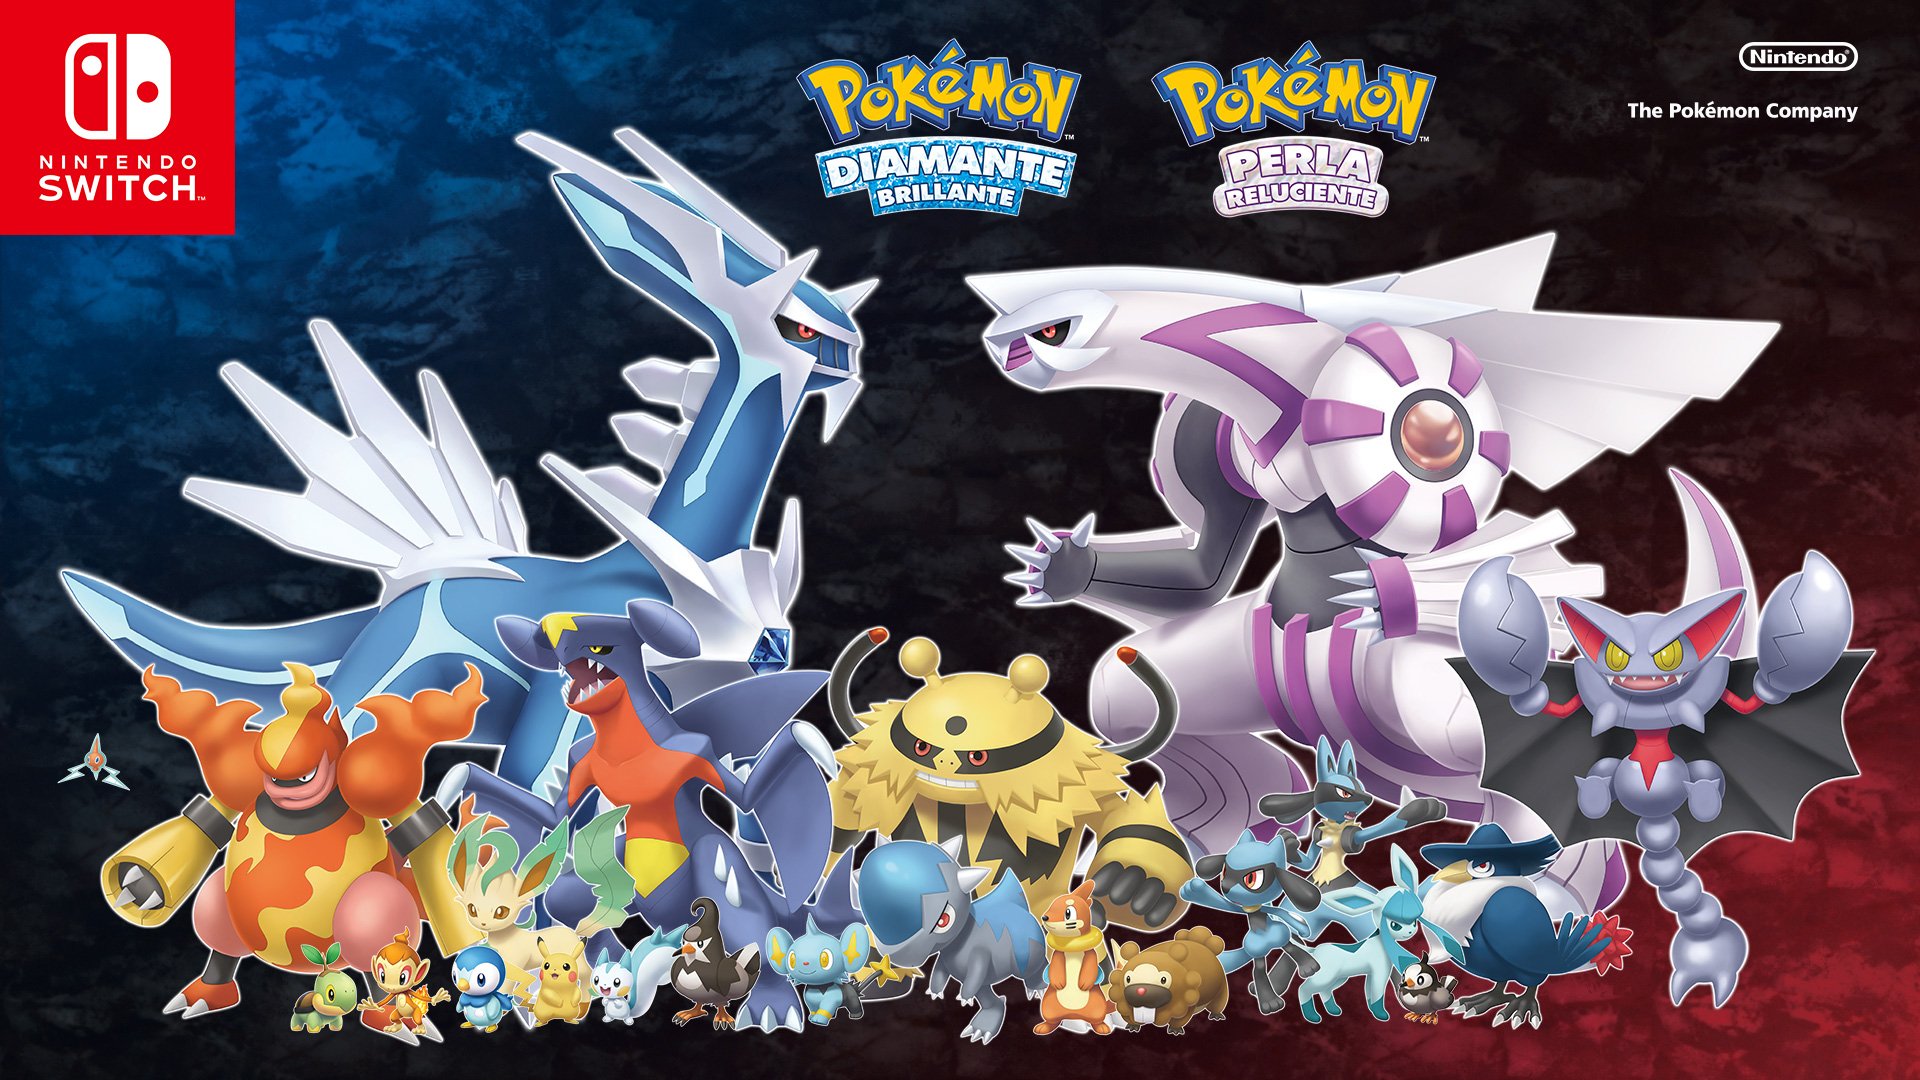 PokéXperto on X: Imagen promocional de Pokémon Diamante Brillante y Perla  Reluciente publicada por la cuenta oficial de Nintendo.   / X